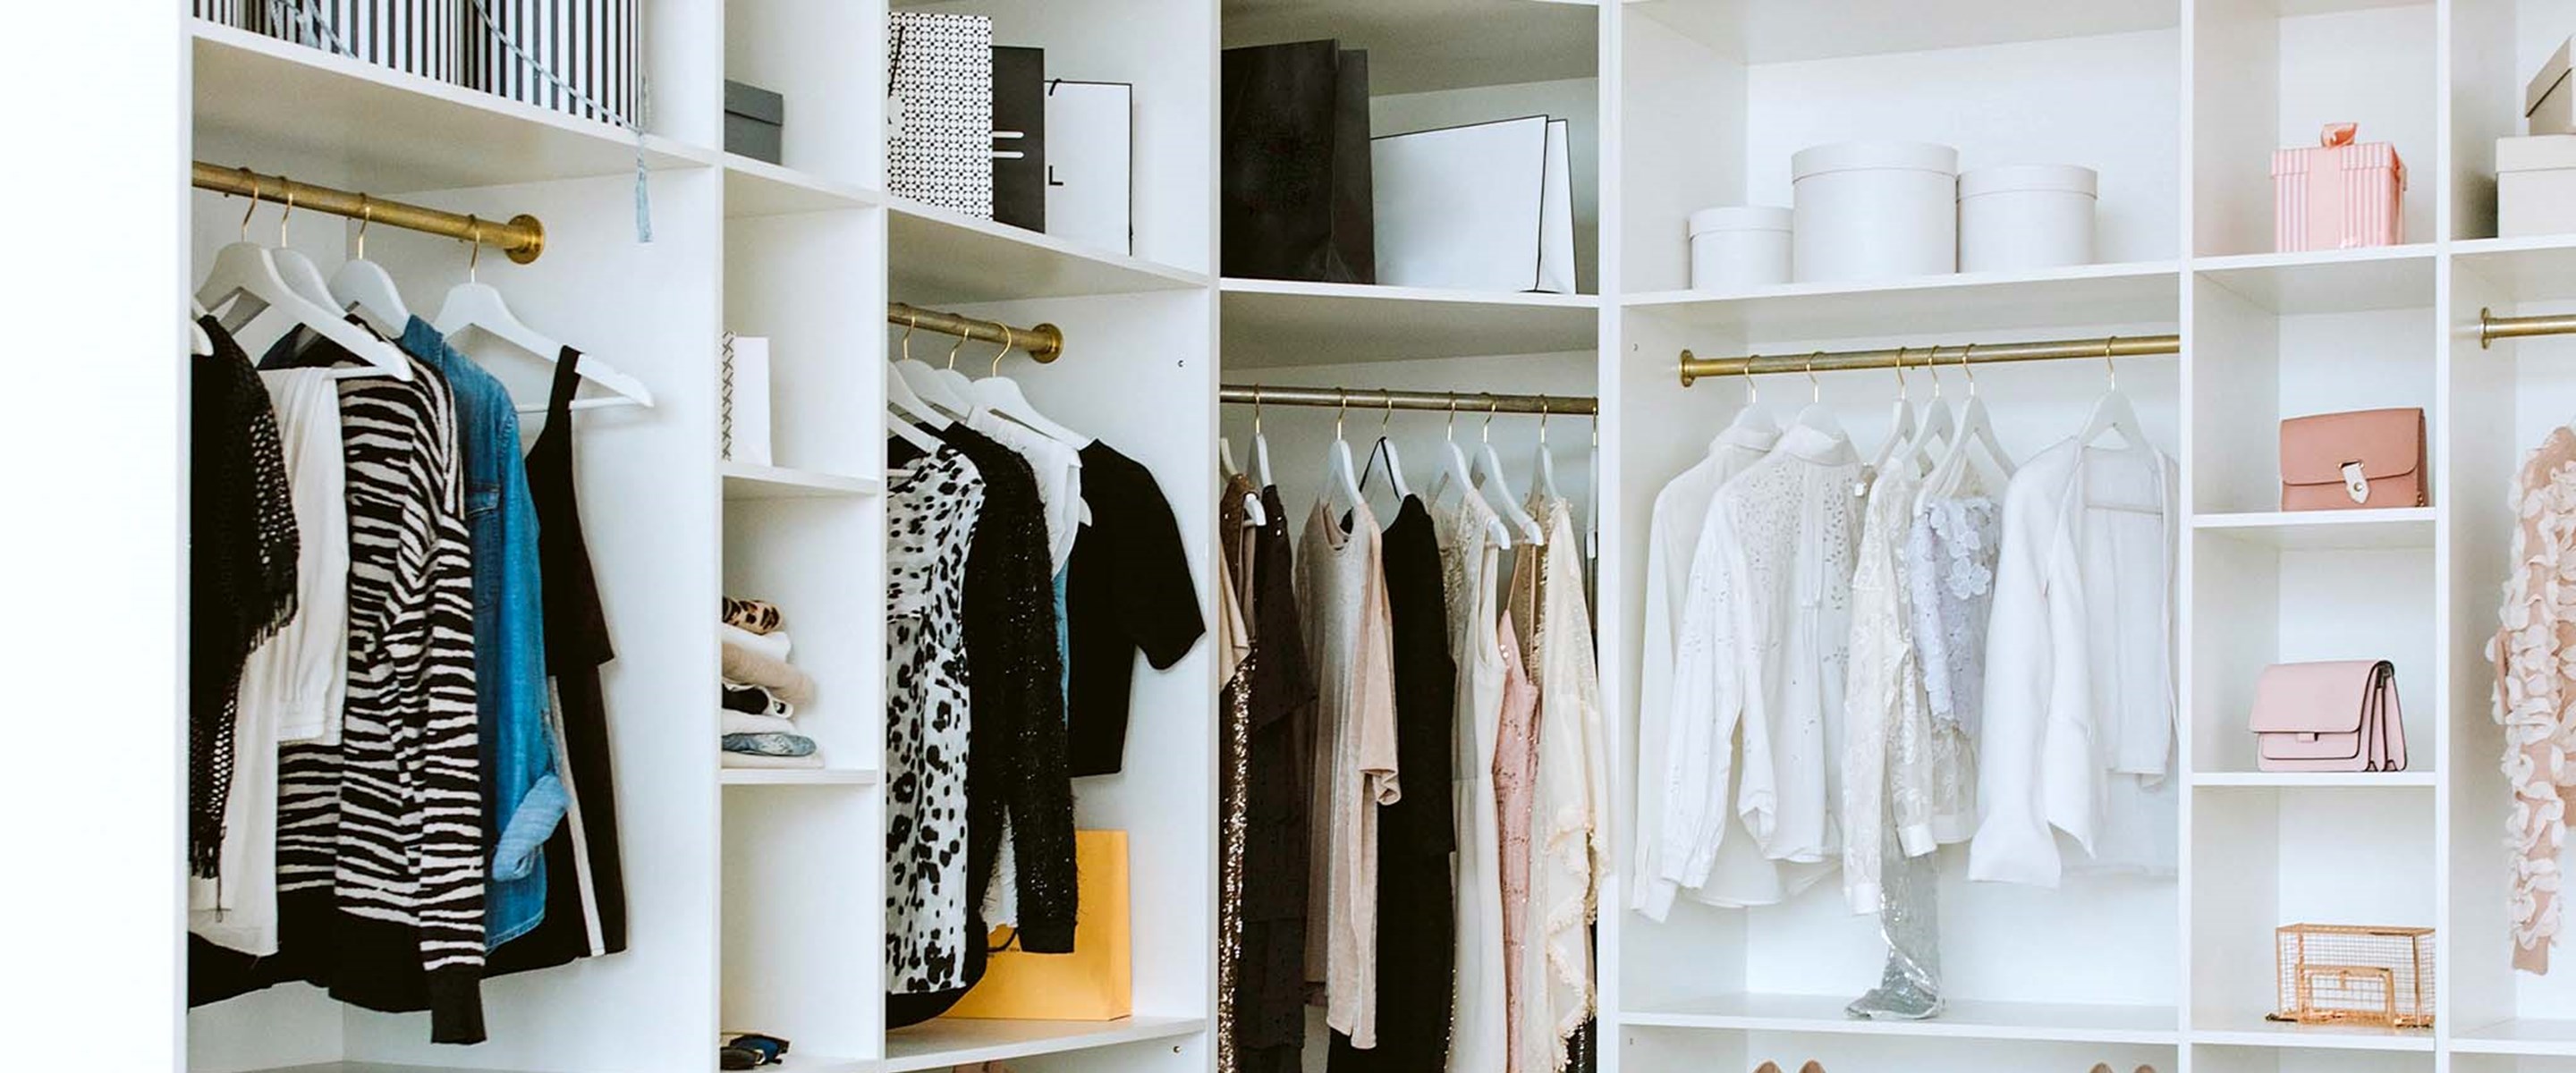 An organized closet